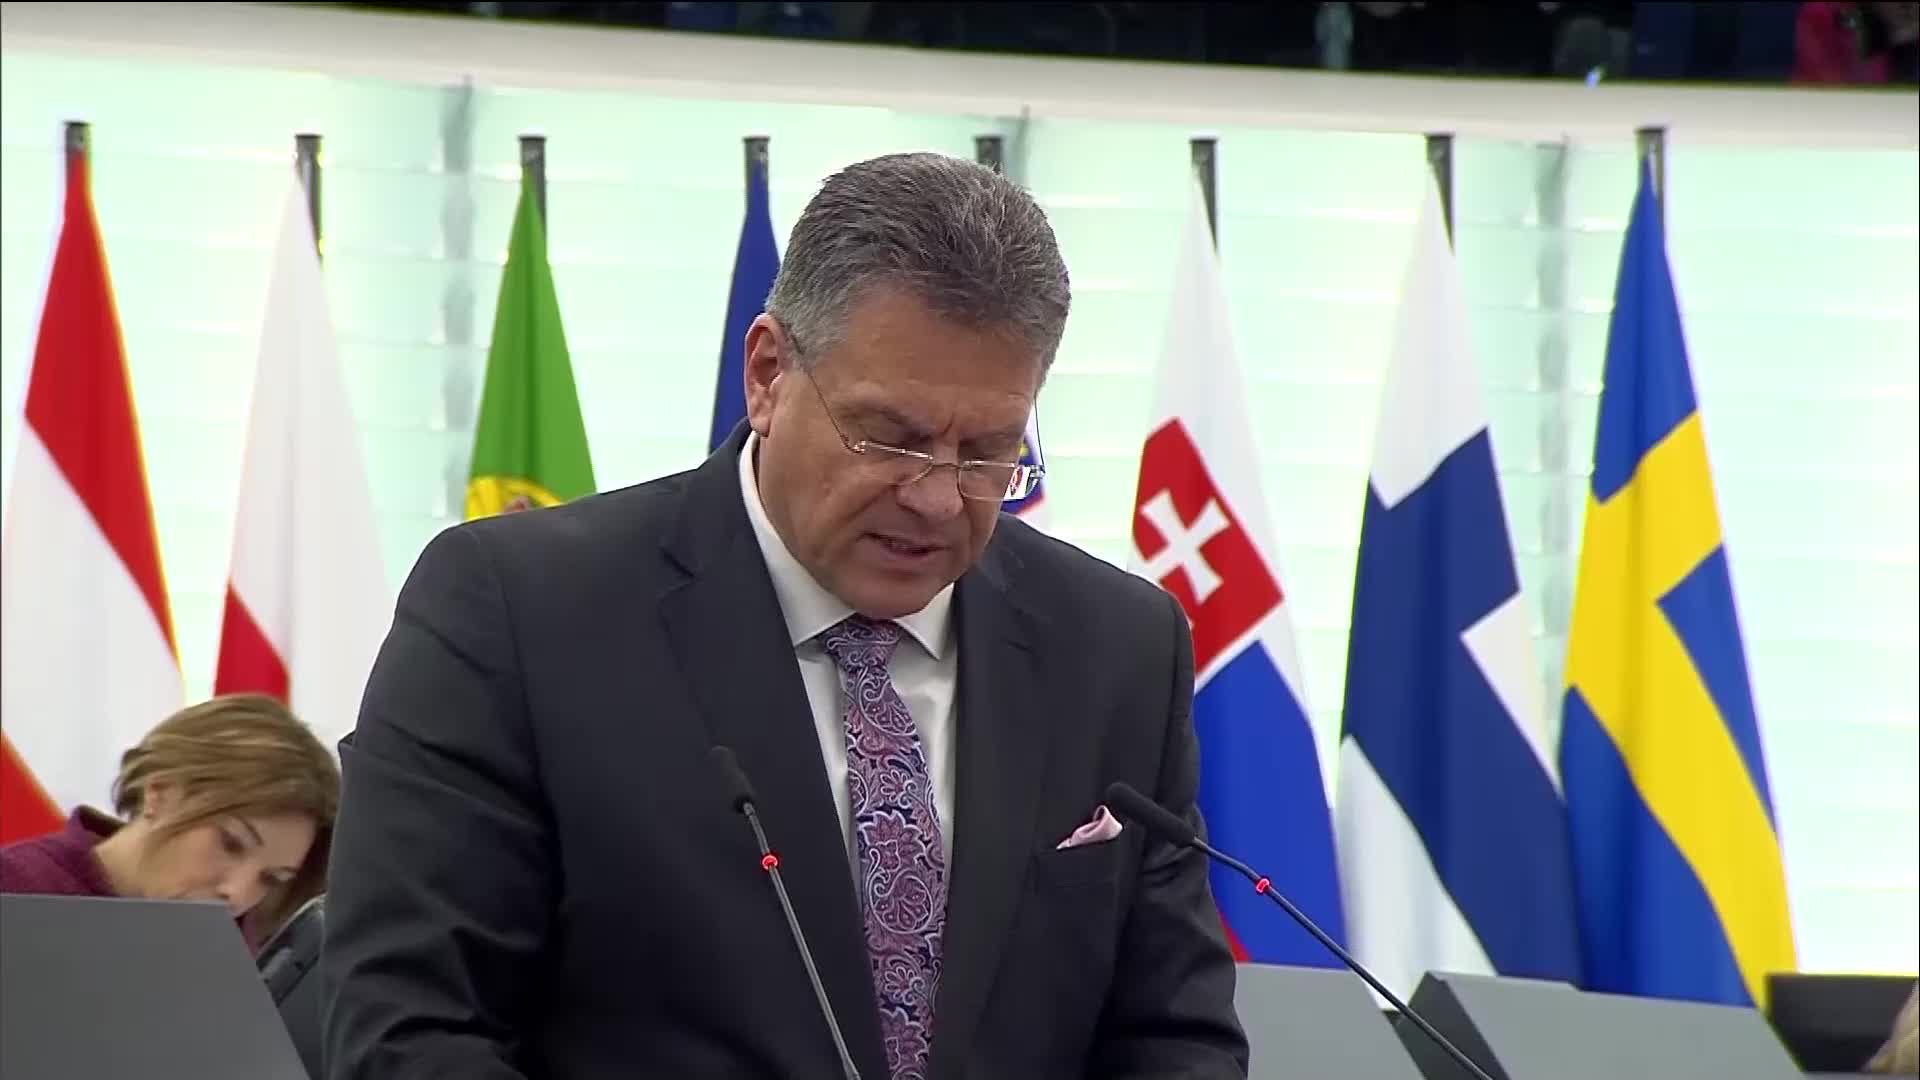 Шефчович: ЕК подкрепя пълноправното членство на България и Румъния в Шенген